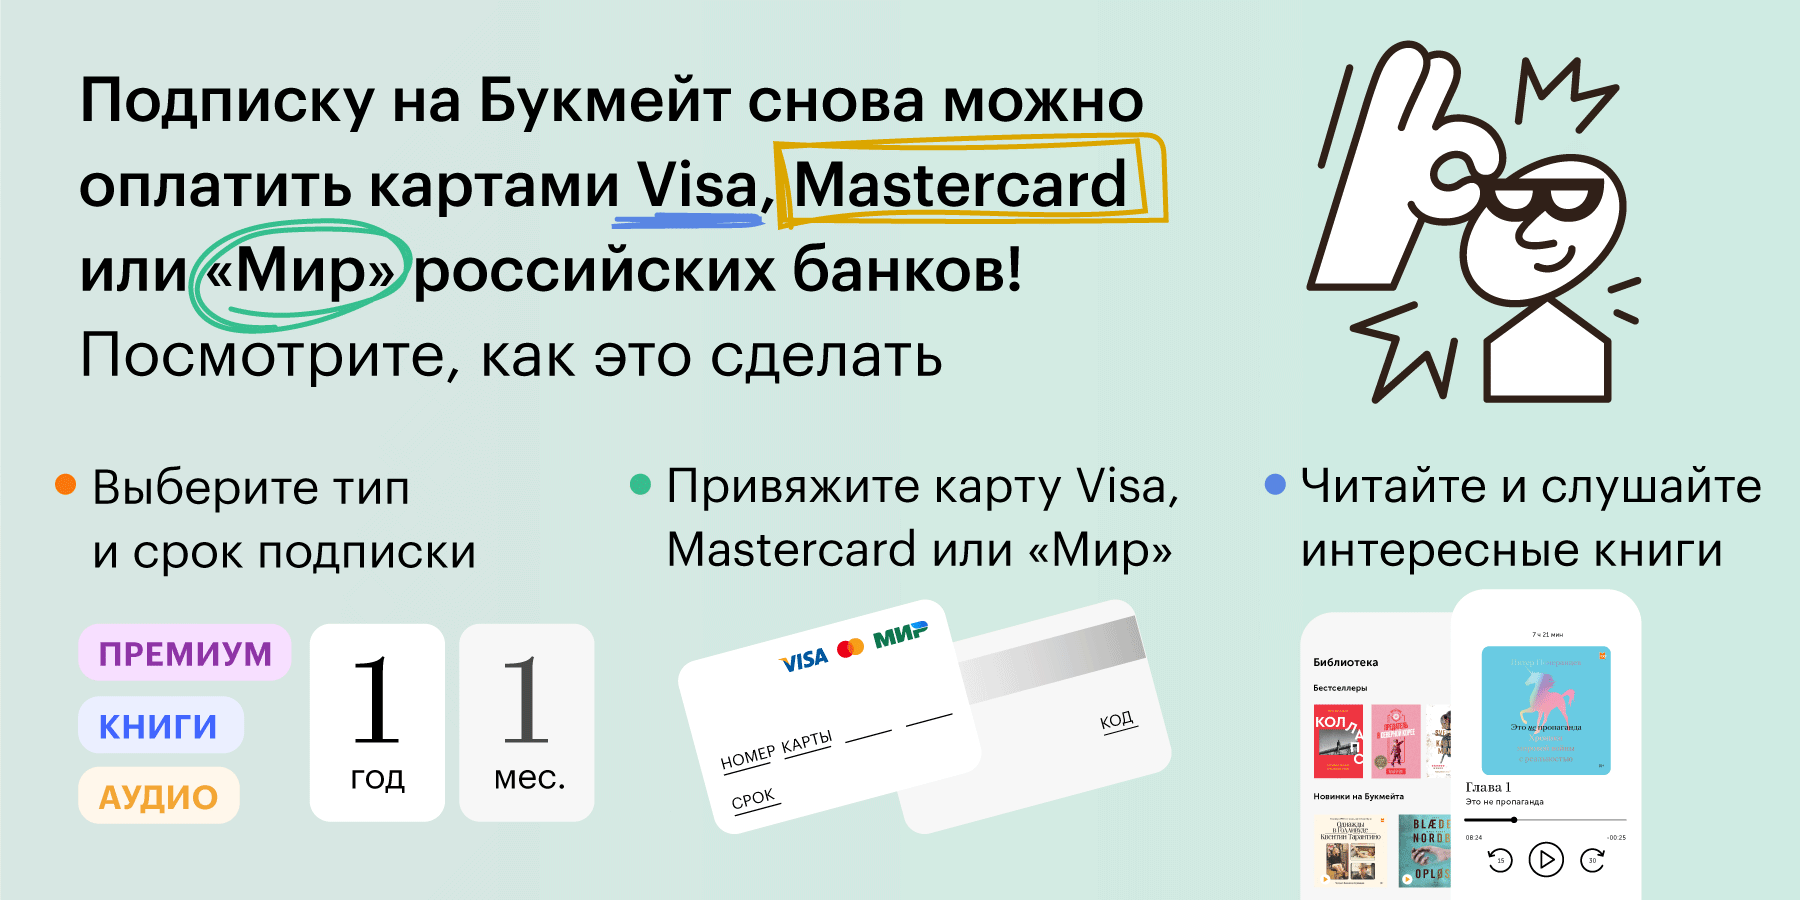 Мы восстановили оплату с любых российских карт. Стоимость подписки осталась прежней!